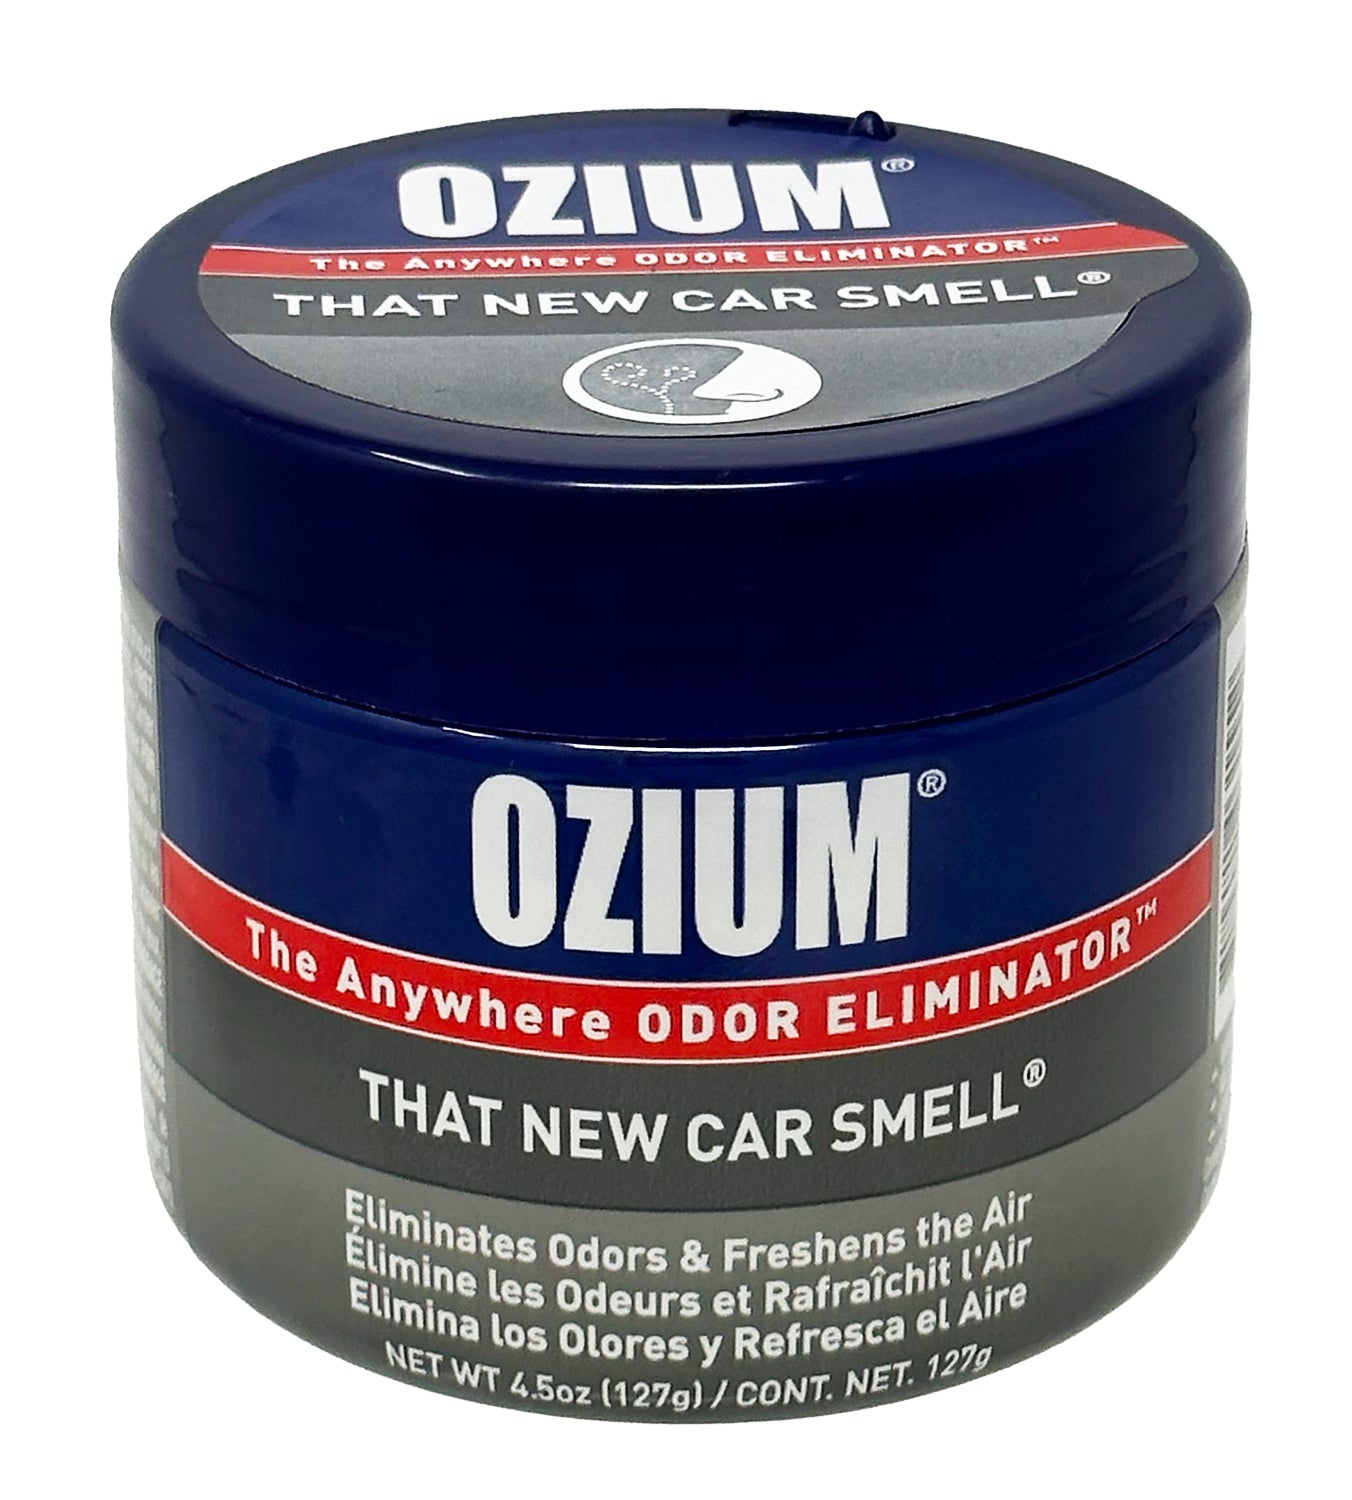 Ozium Smoke & Odors mLygz Eliminator Gel. Home, Office and Car Air  Freshener, 4.5 oz (4 Pack)